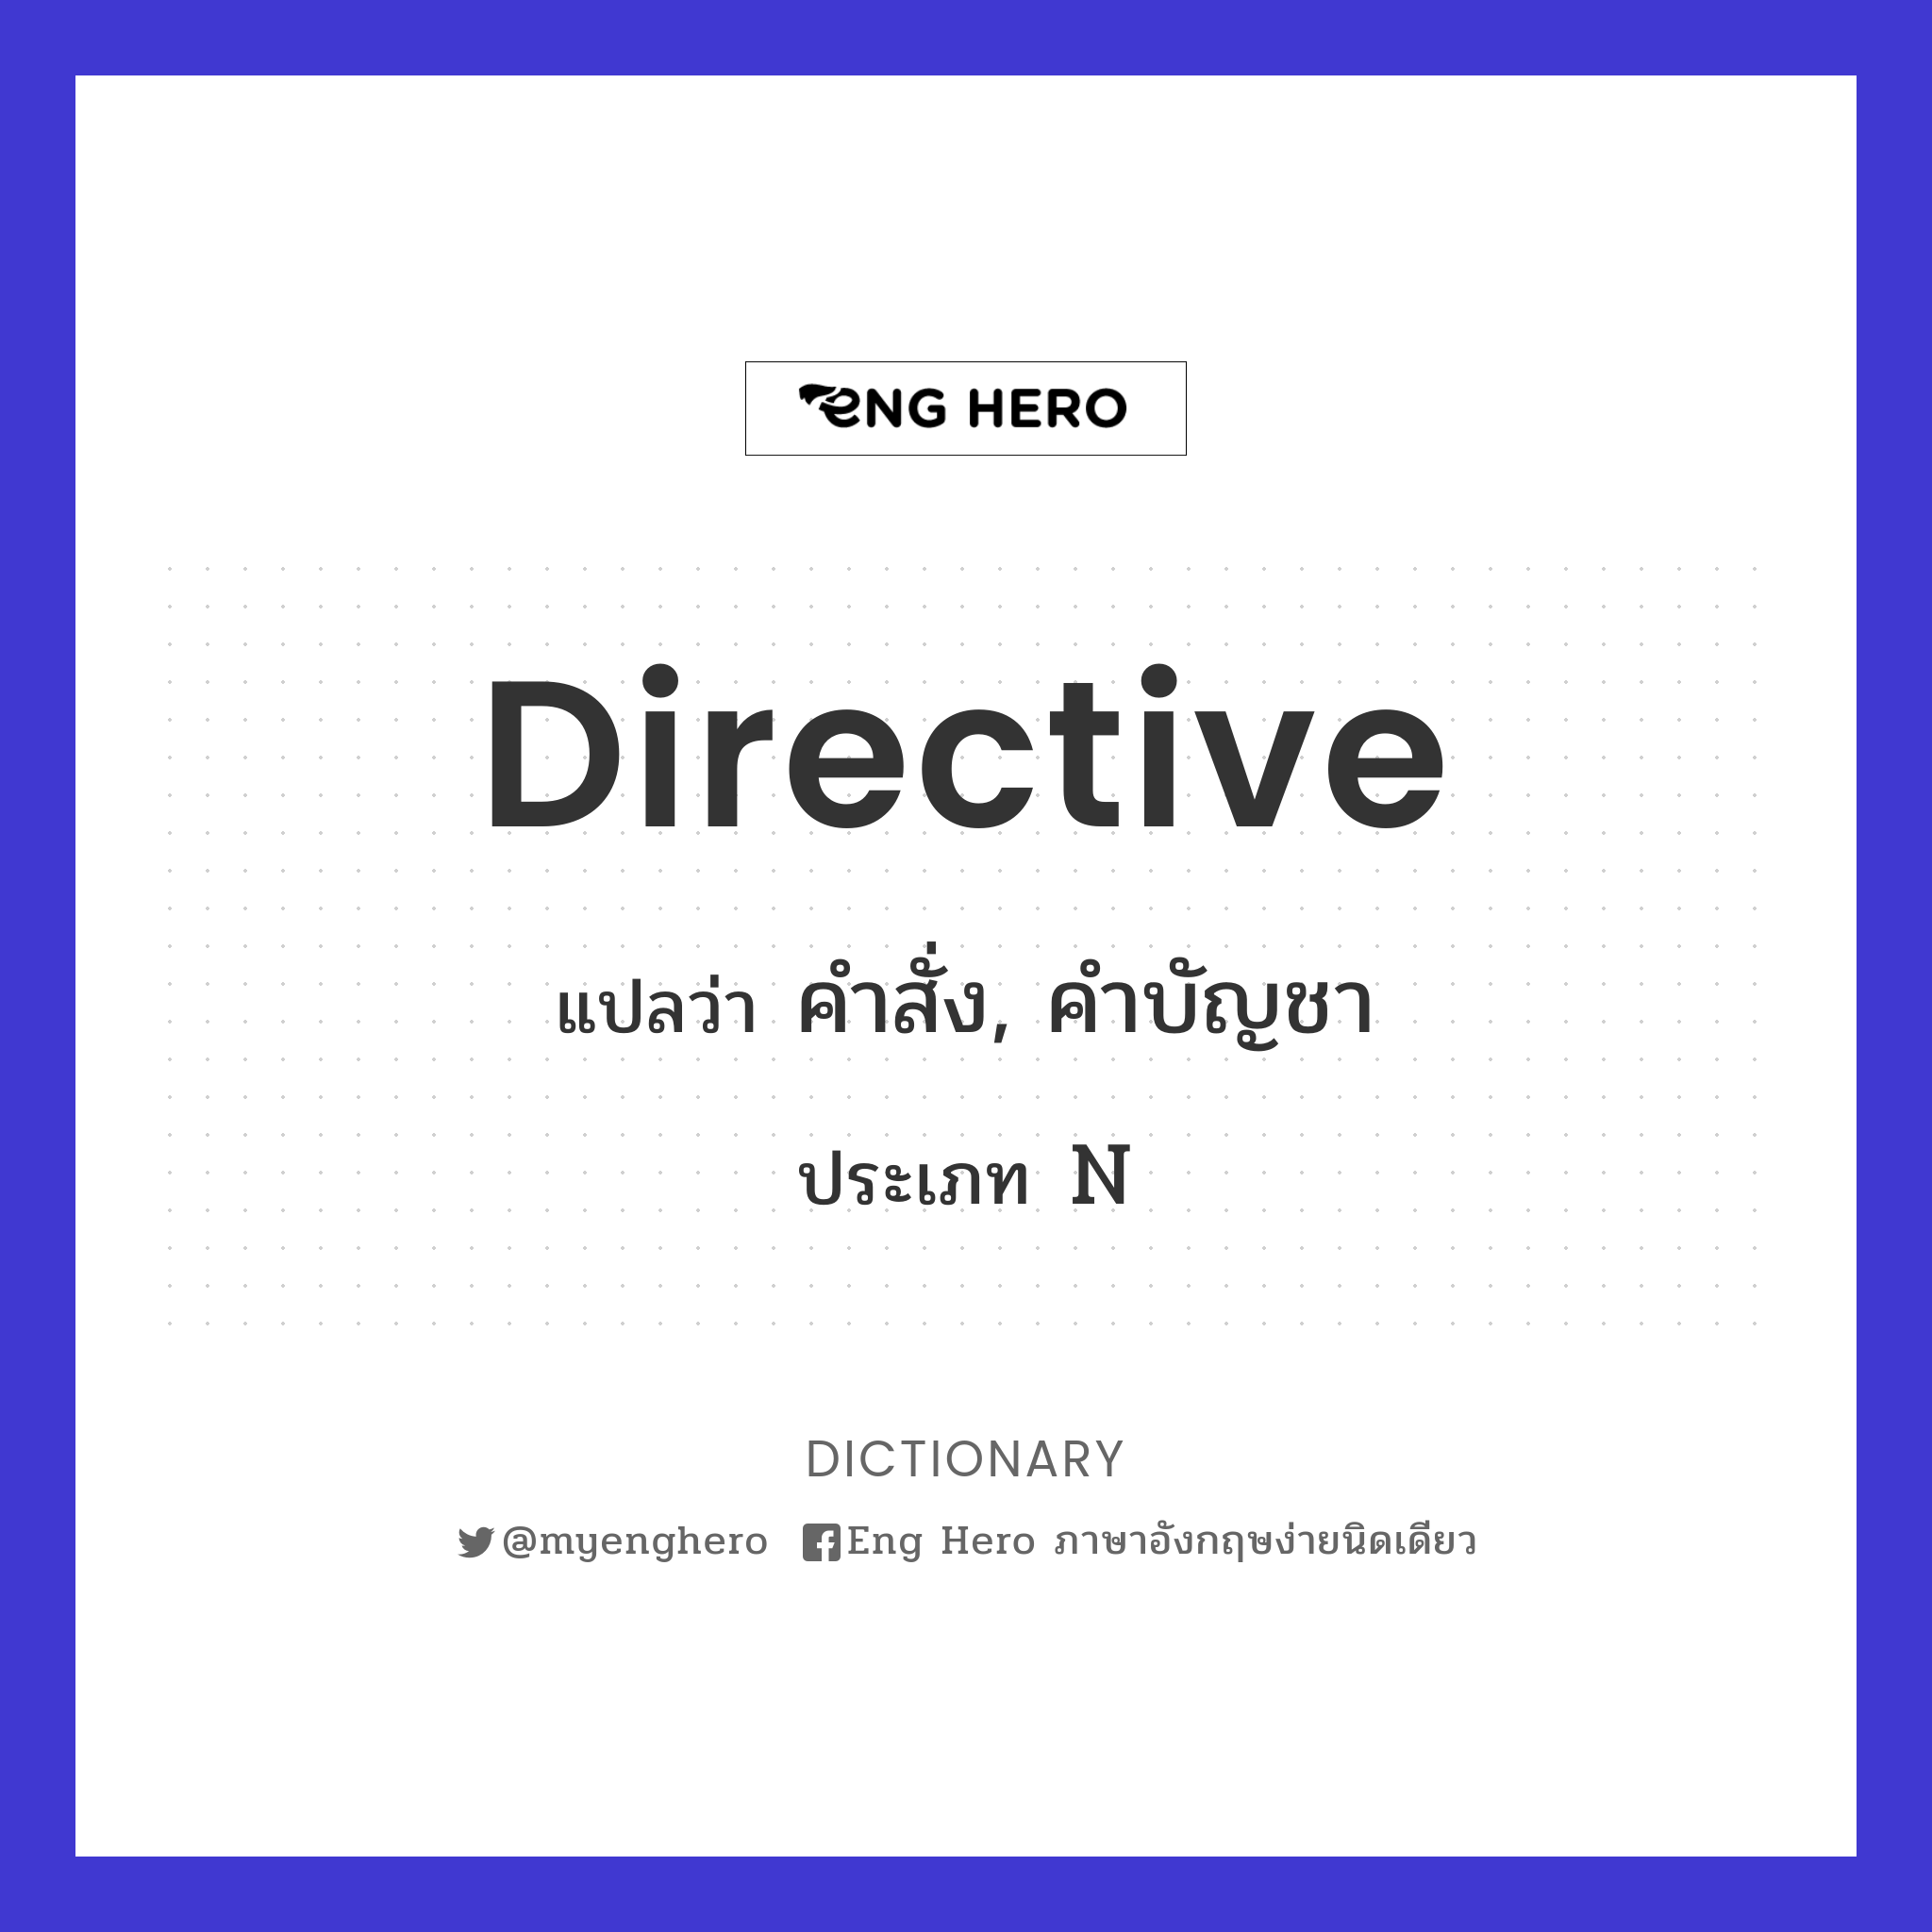 directive